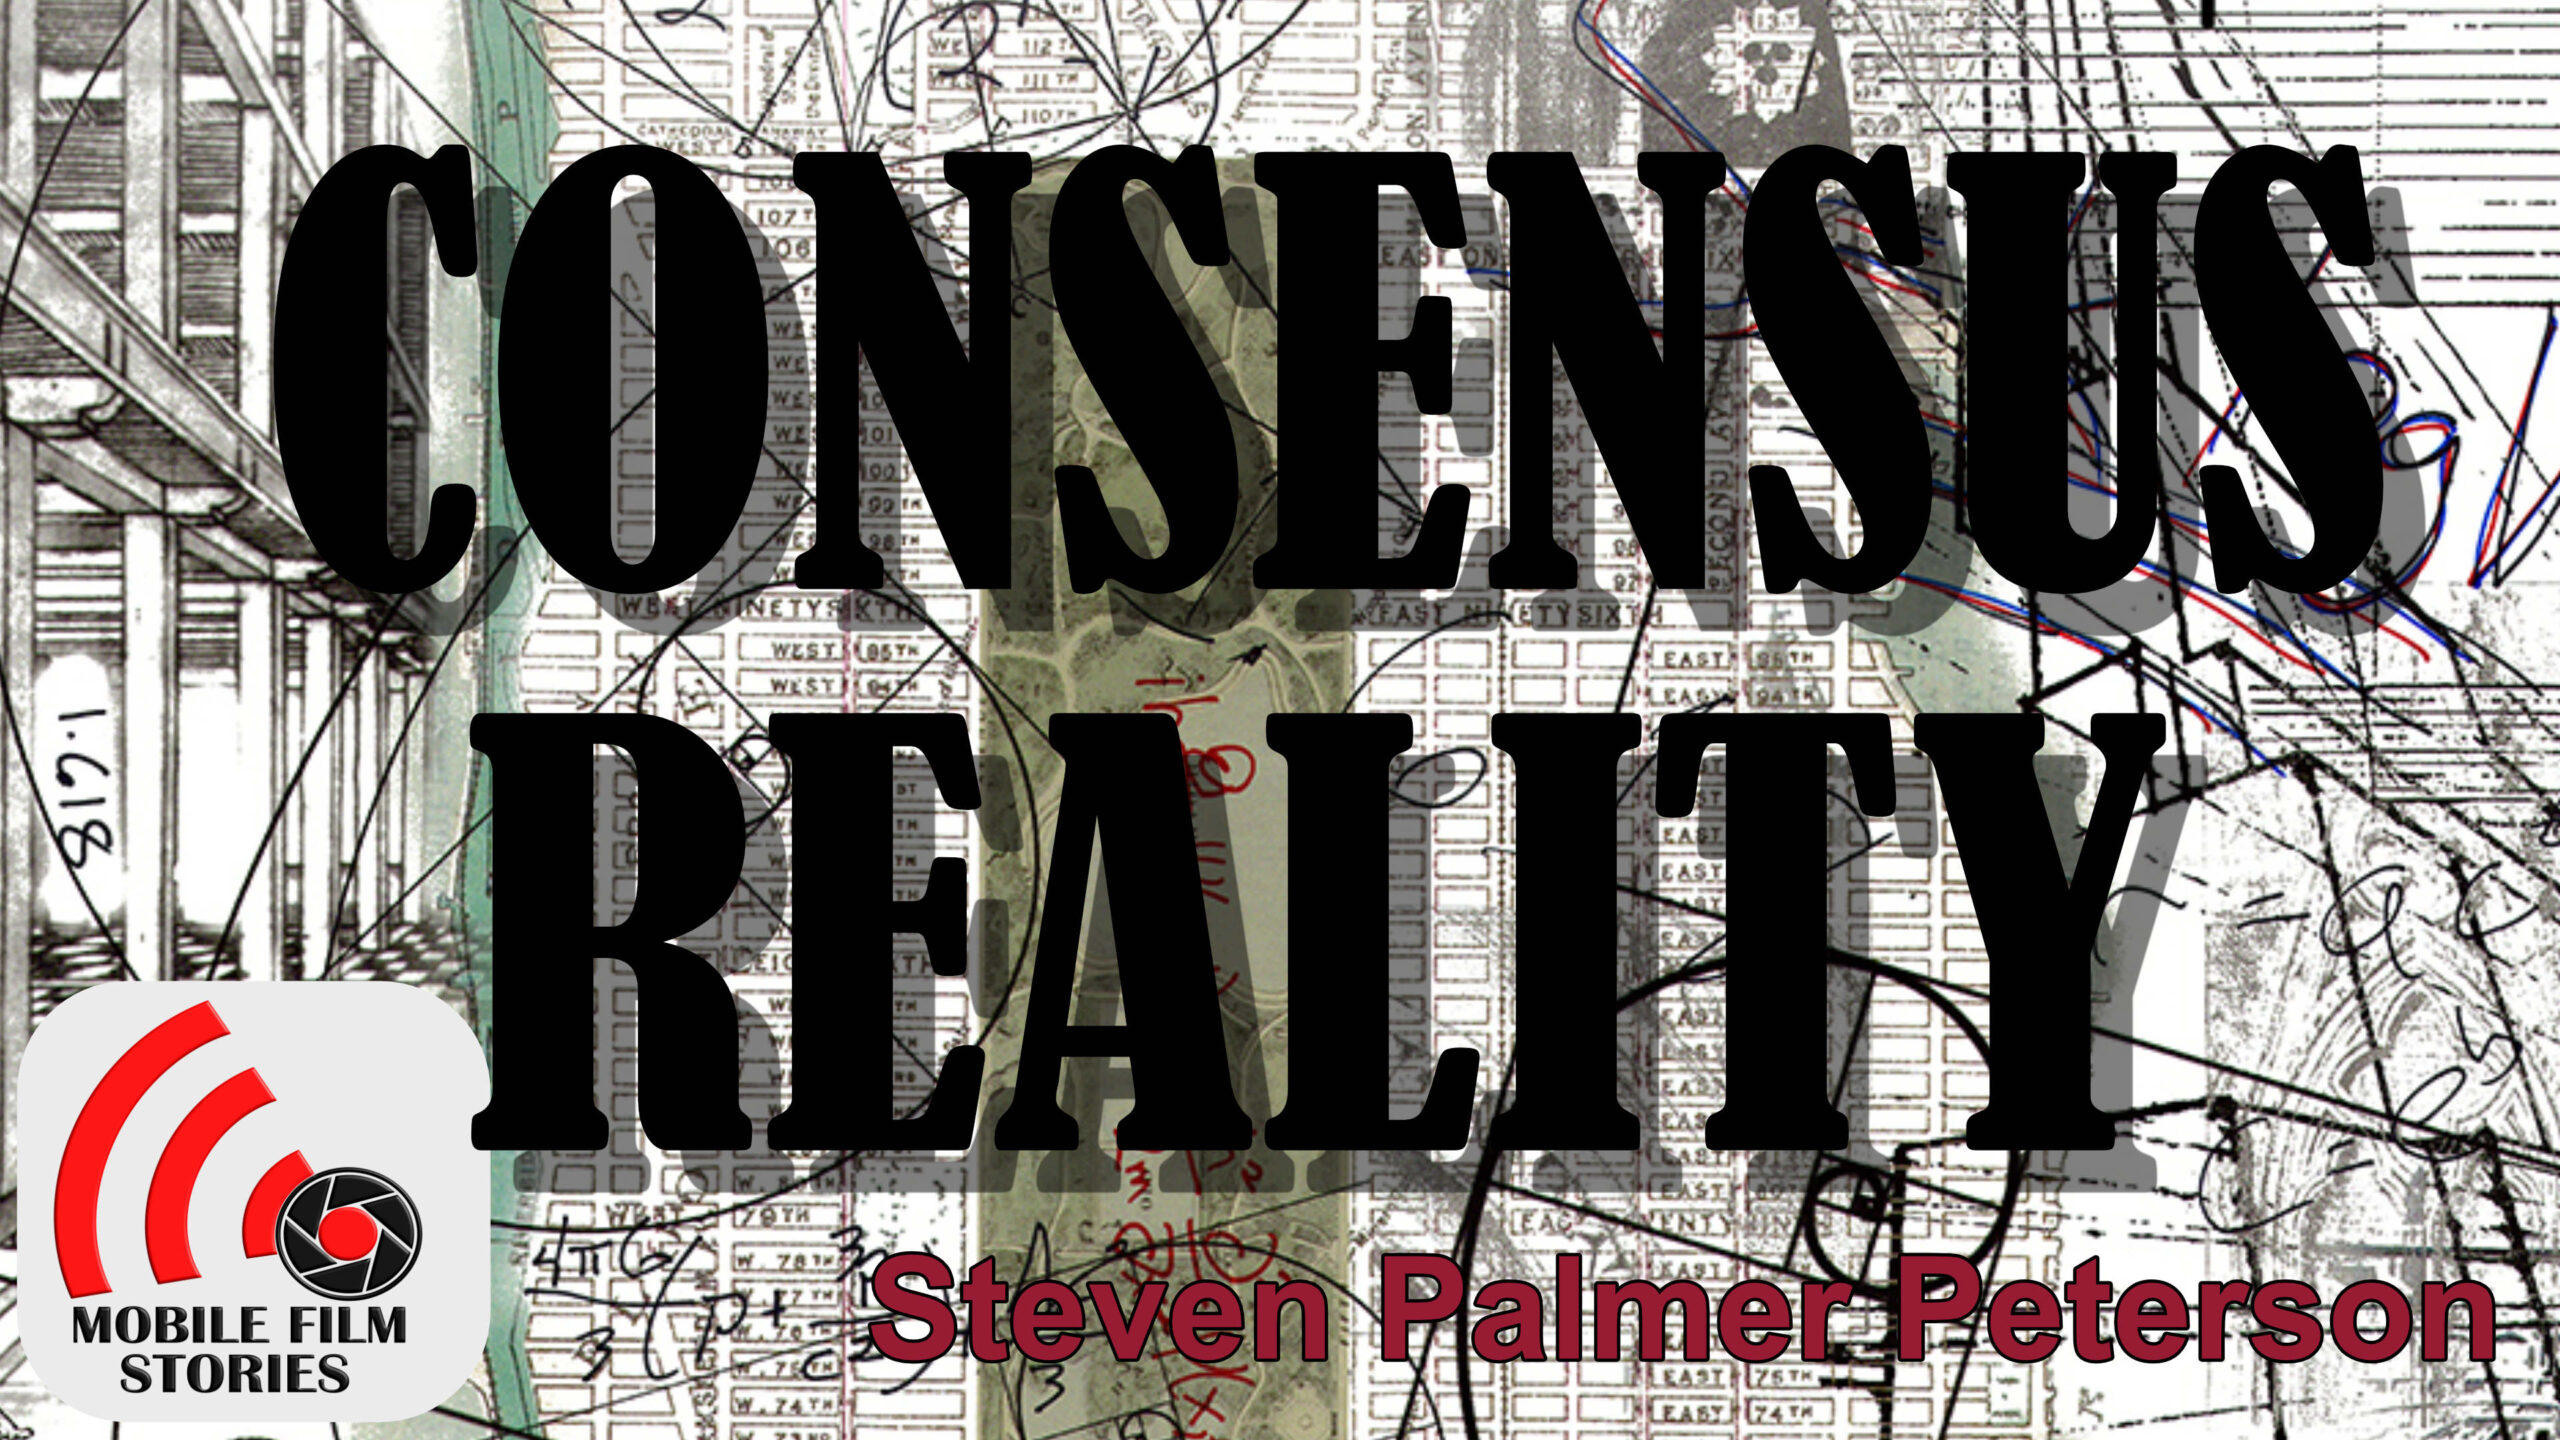 Consensus Reality